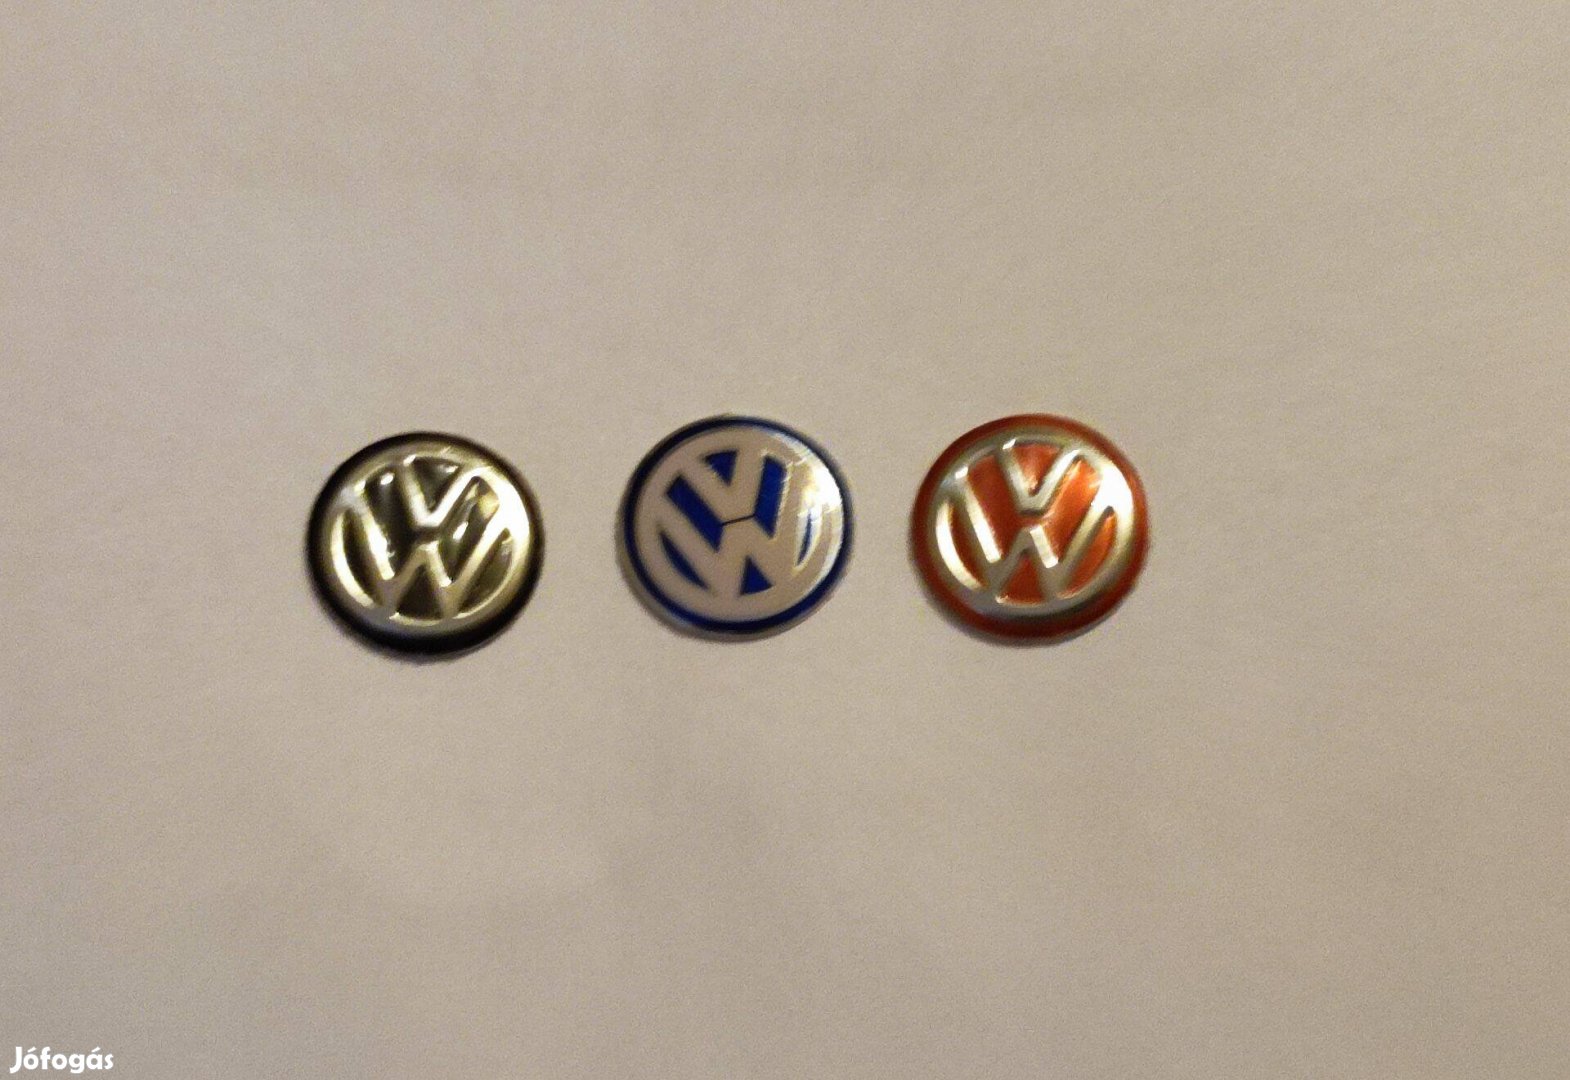 VW indítókulcs (autó kulcs) embléma 14, 10 mm-es kék, fekete, piros